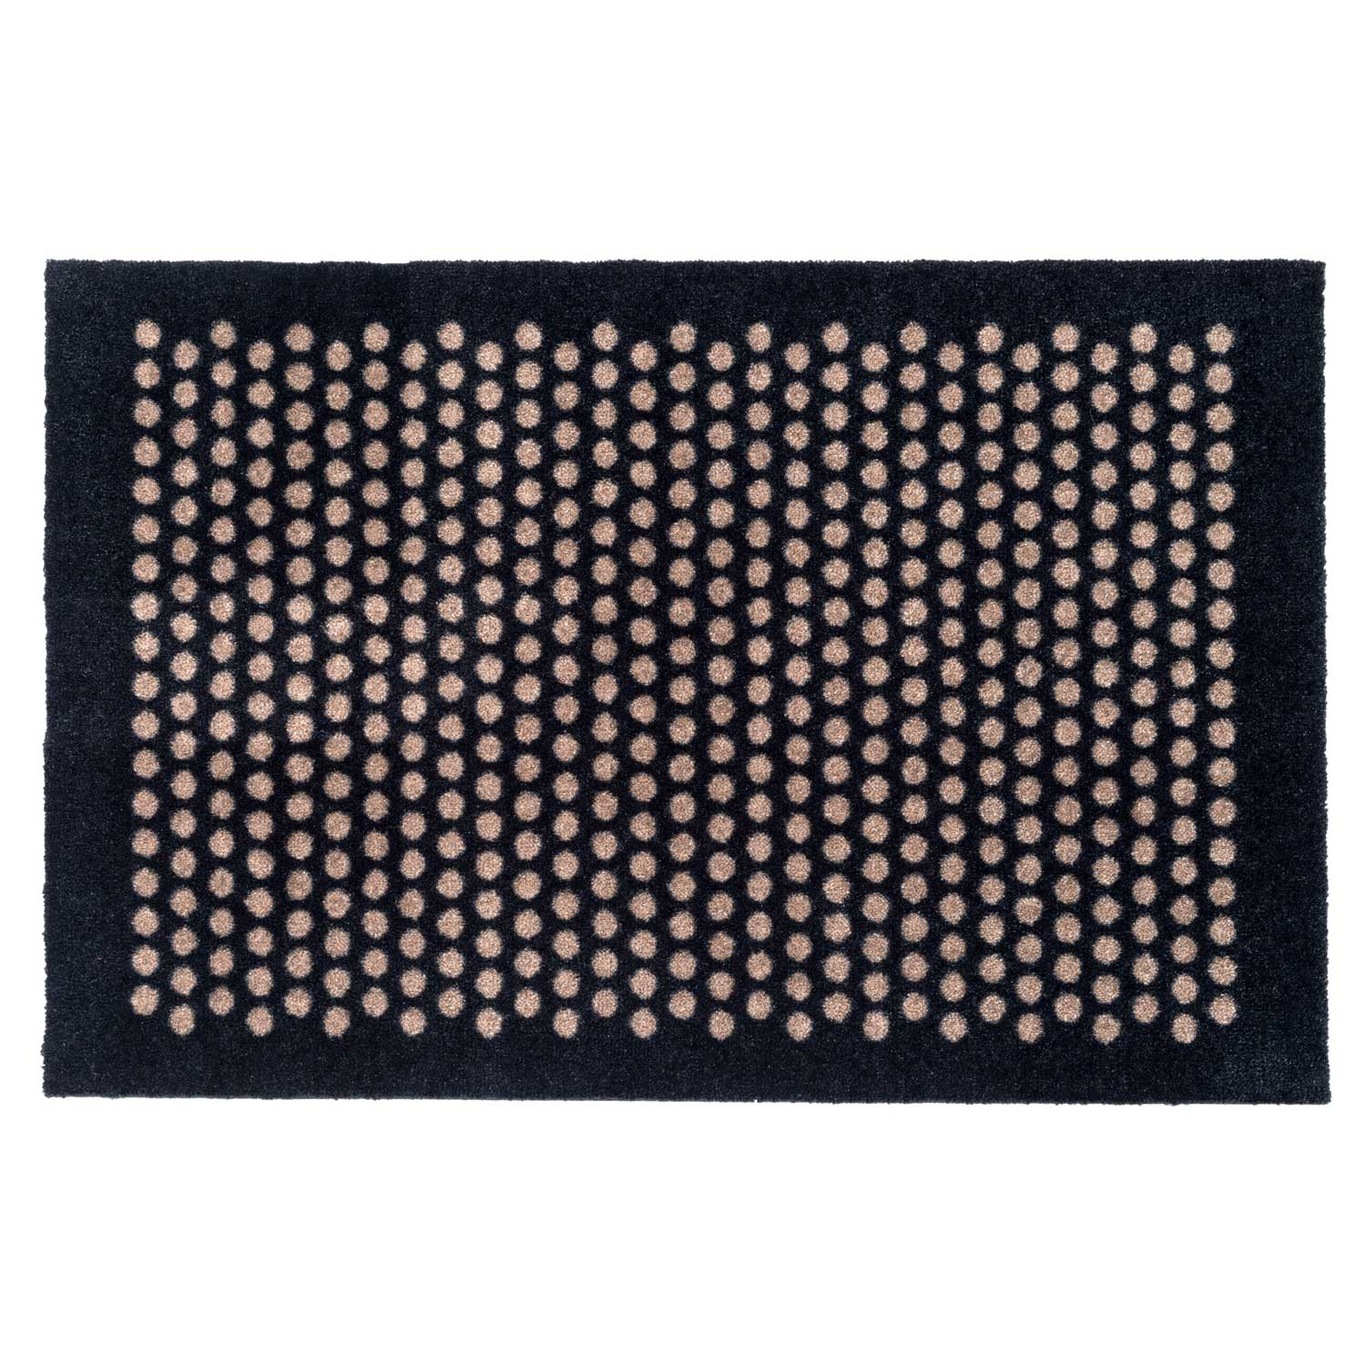 Dot Door Mat, Black / Beige, 90x60 cm